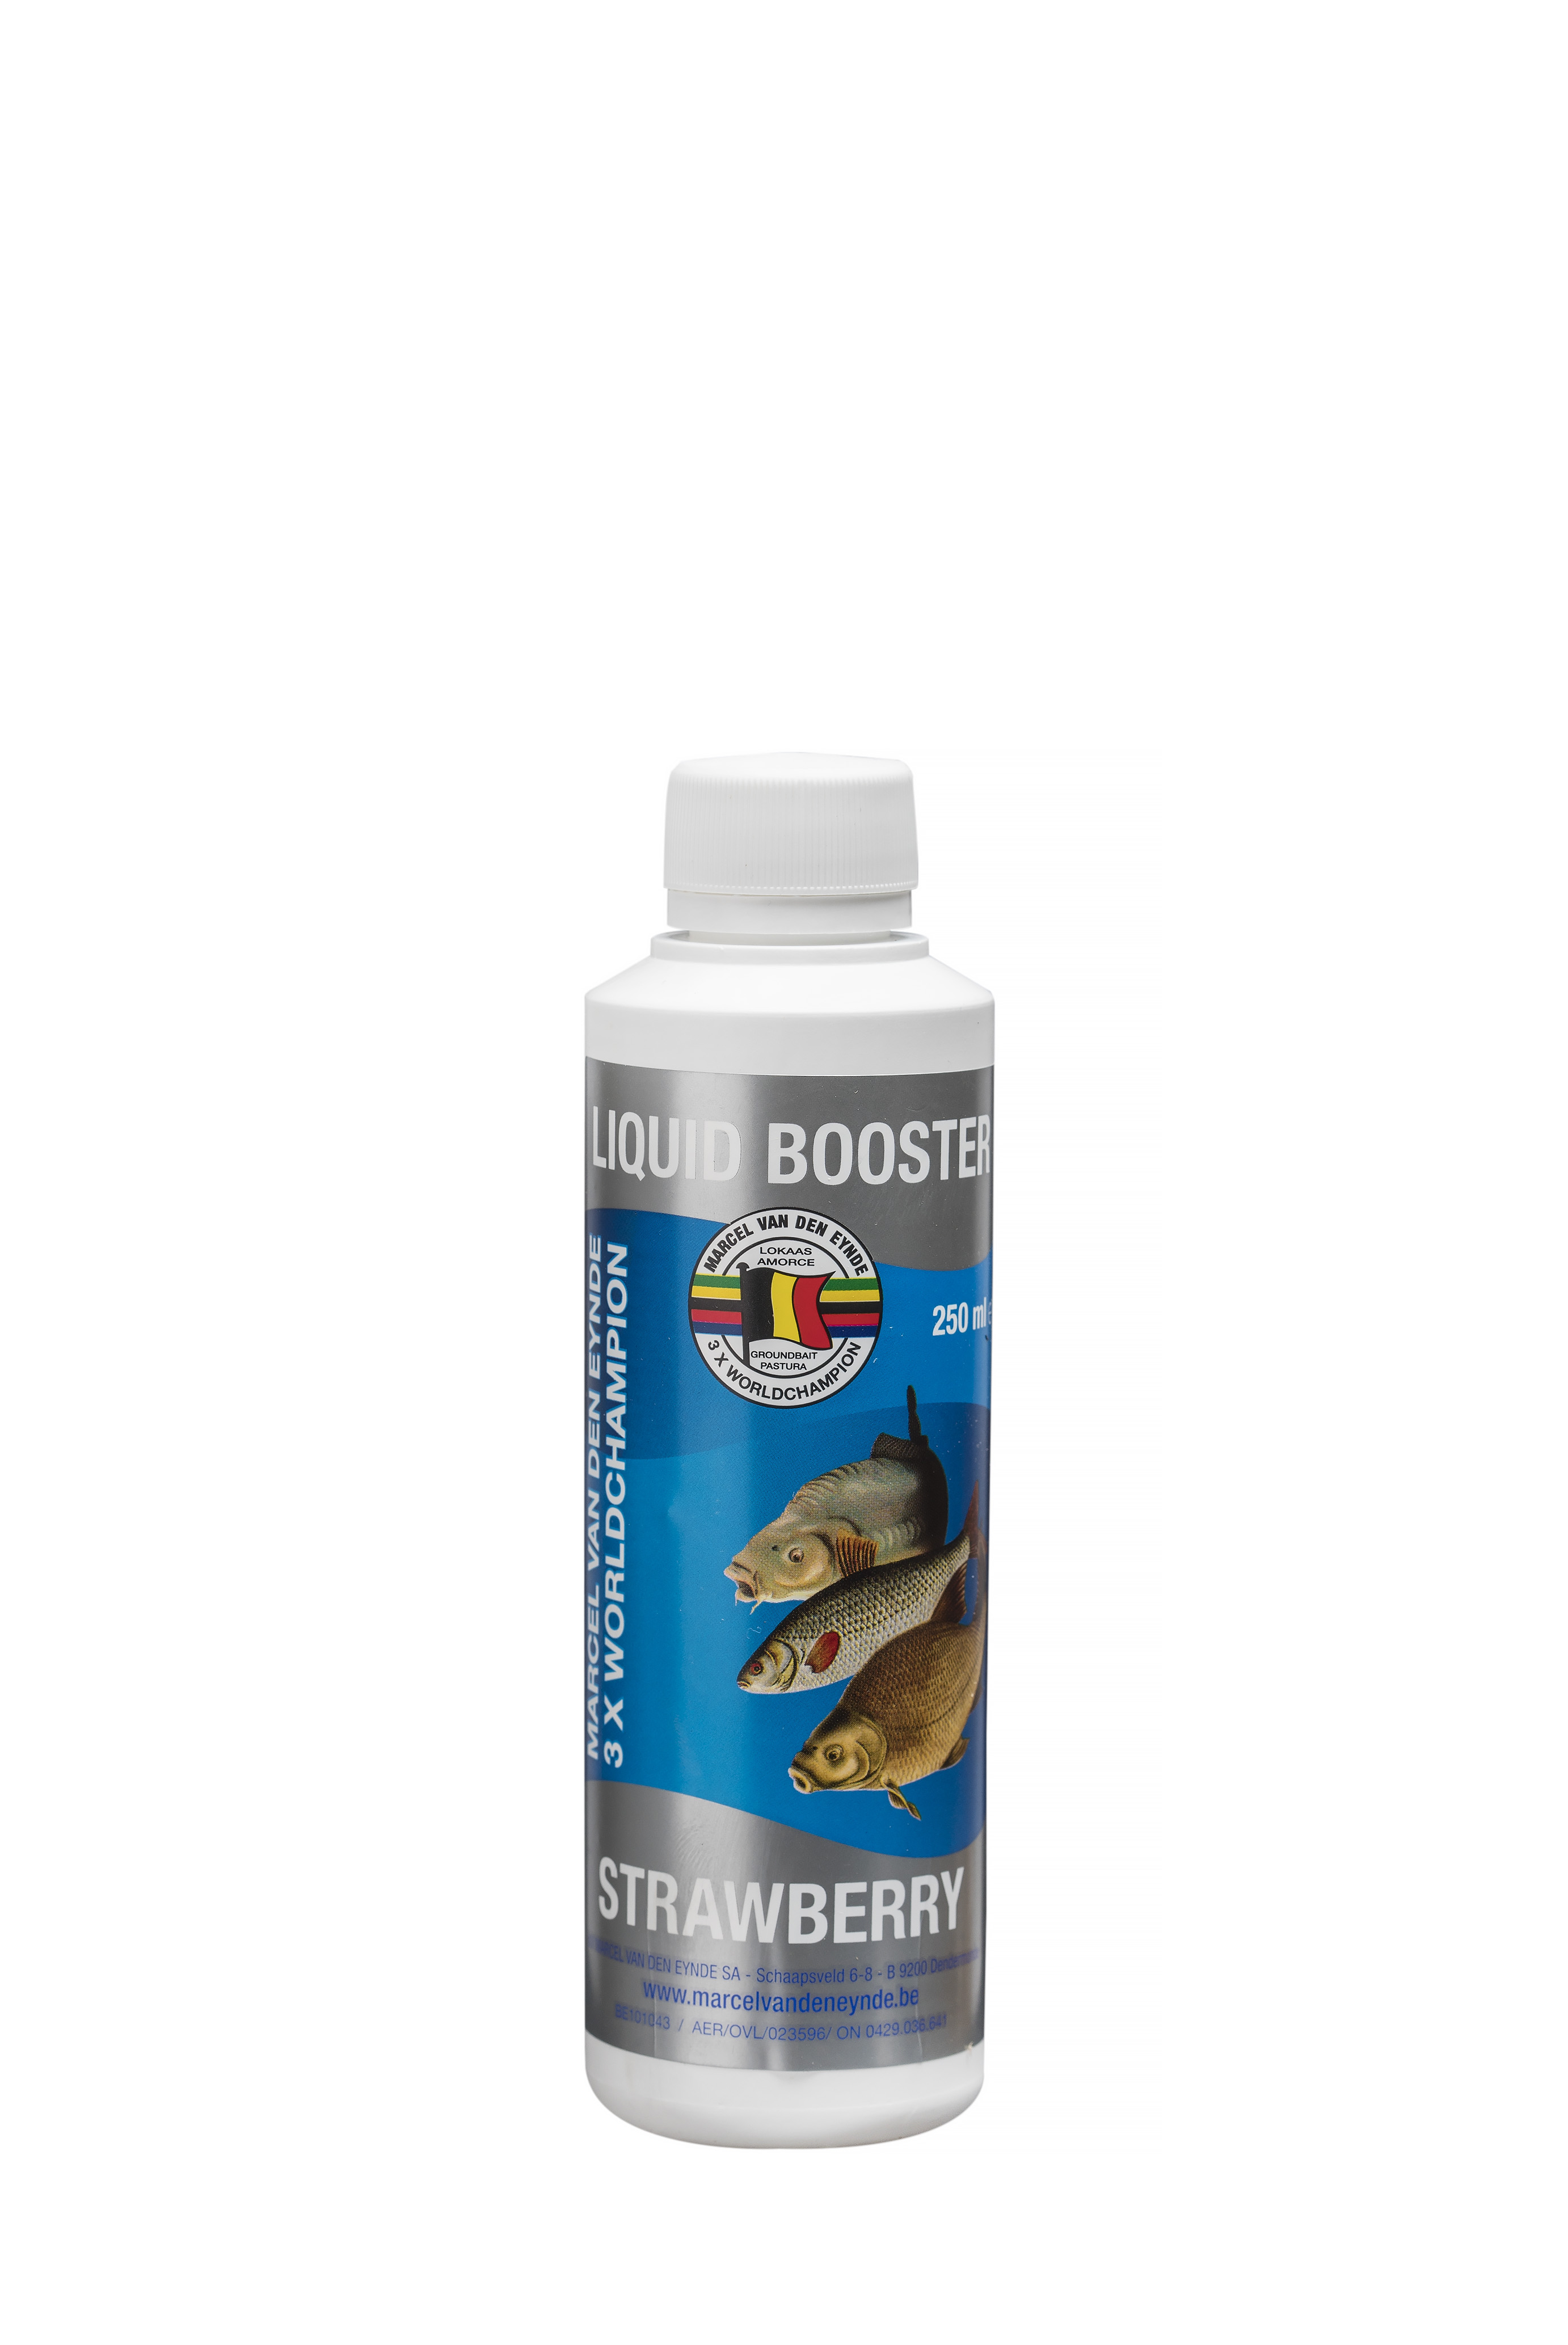 VDE Liquid Booster Strawberry 250 ml. (Jagoda) -  Ime tečnog pojačivača govori sve, poboljšaće ukus i miris vašeg mamca. Koristili smo različite sastojke kako bismo napravili ukusan proizvod koji se može koristiti u mamcima, peletima i česticama. Tečni pojačivači su mnogo intenzivniji od našeg asortimana tekućih aroma, zato preporučujemo upotrebu 125 ml za 4 kg mamaca. 12.50 BAM